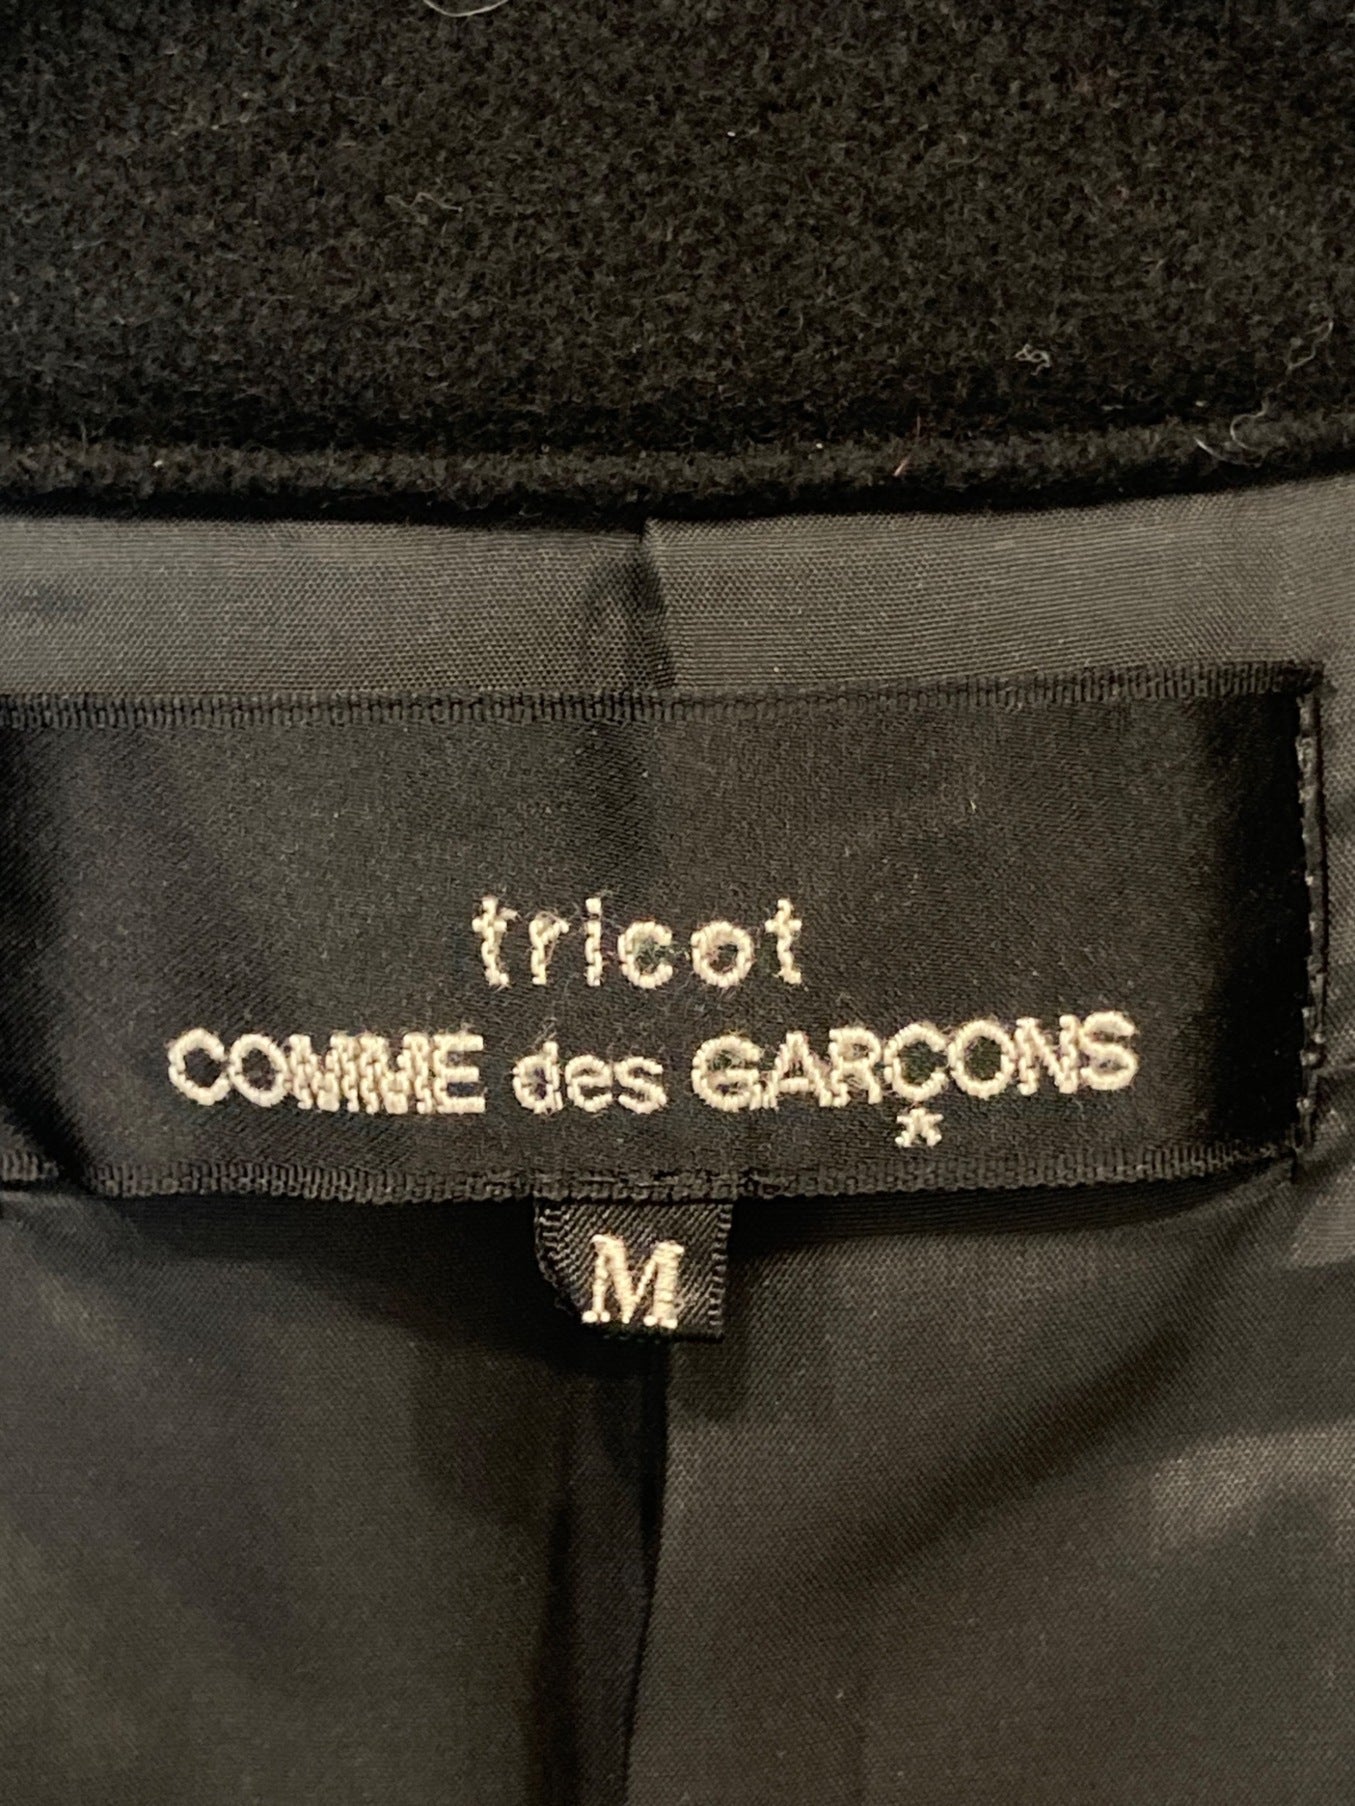 Tricot Comme des Garcons雙羊毛外套TD-C013